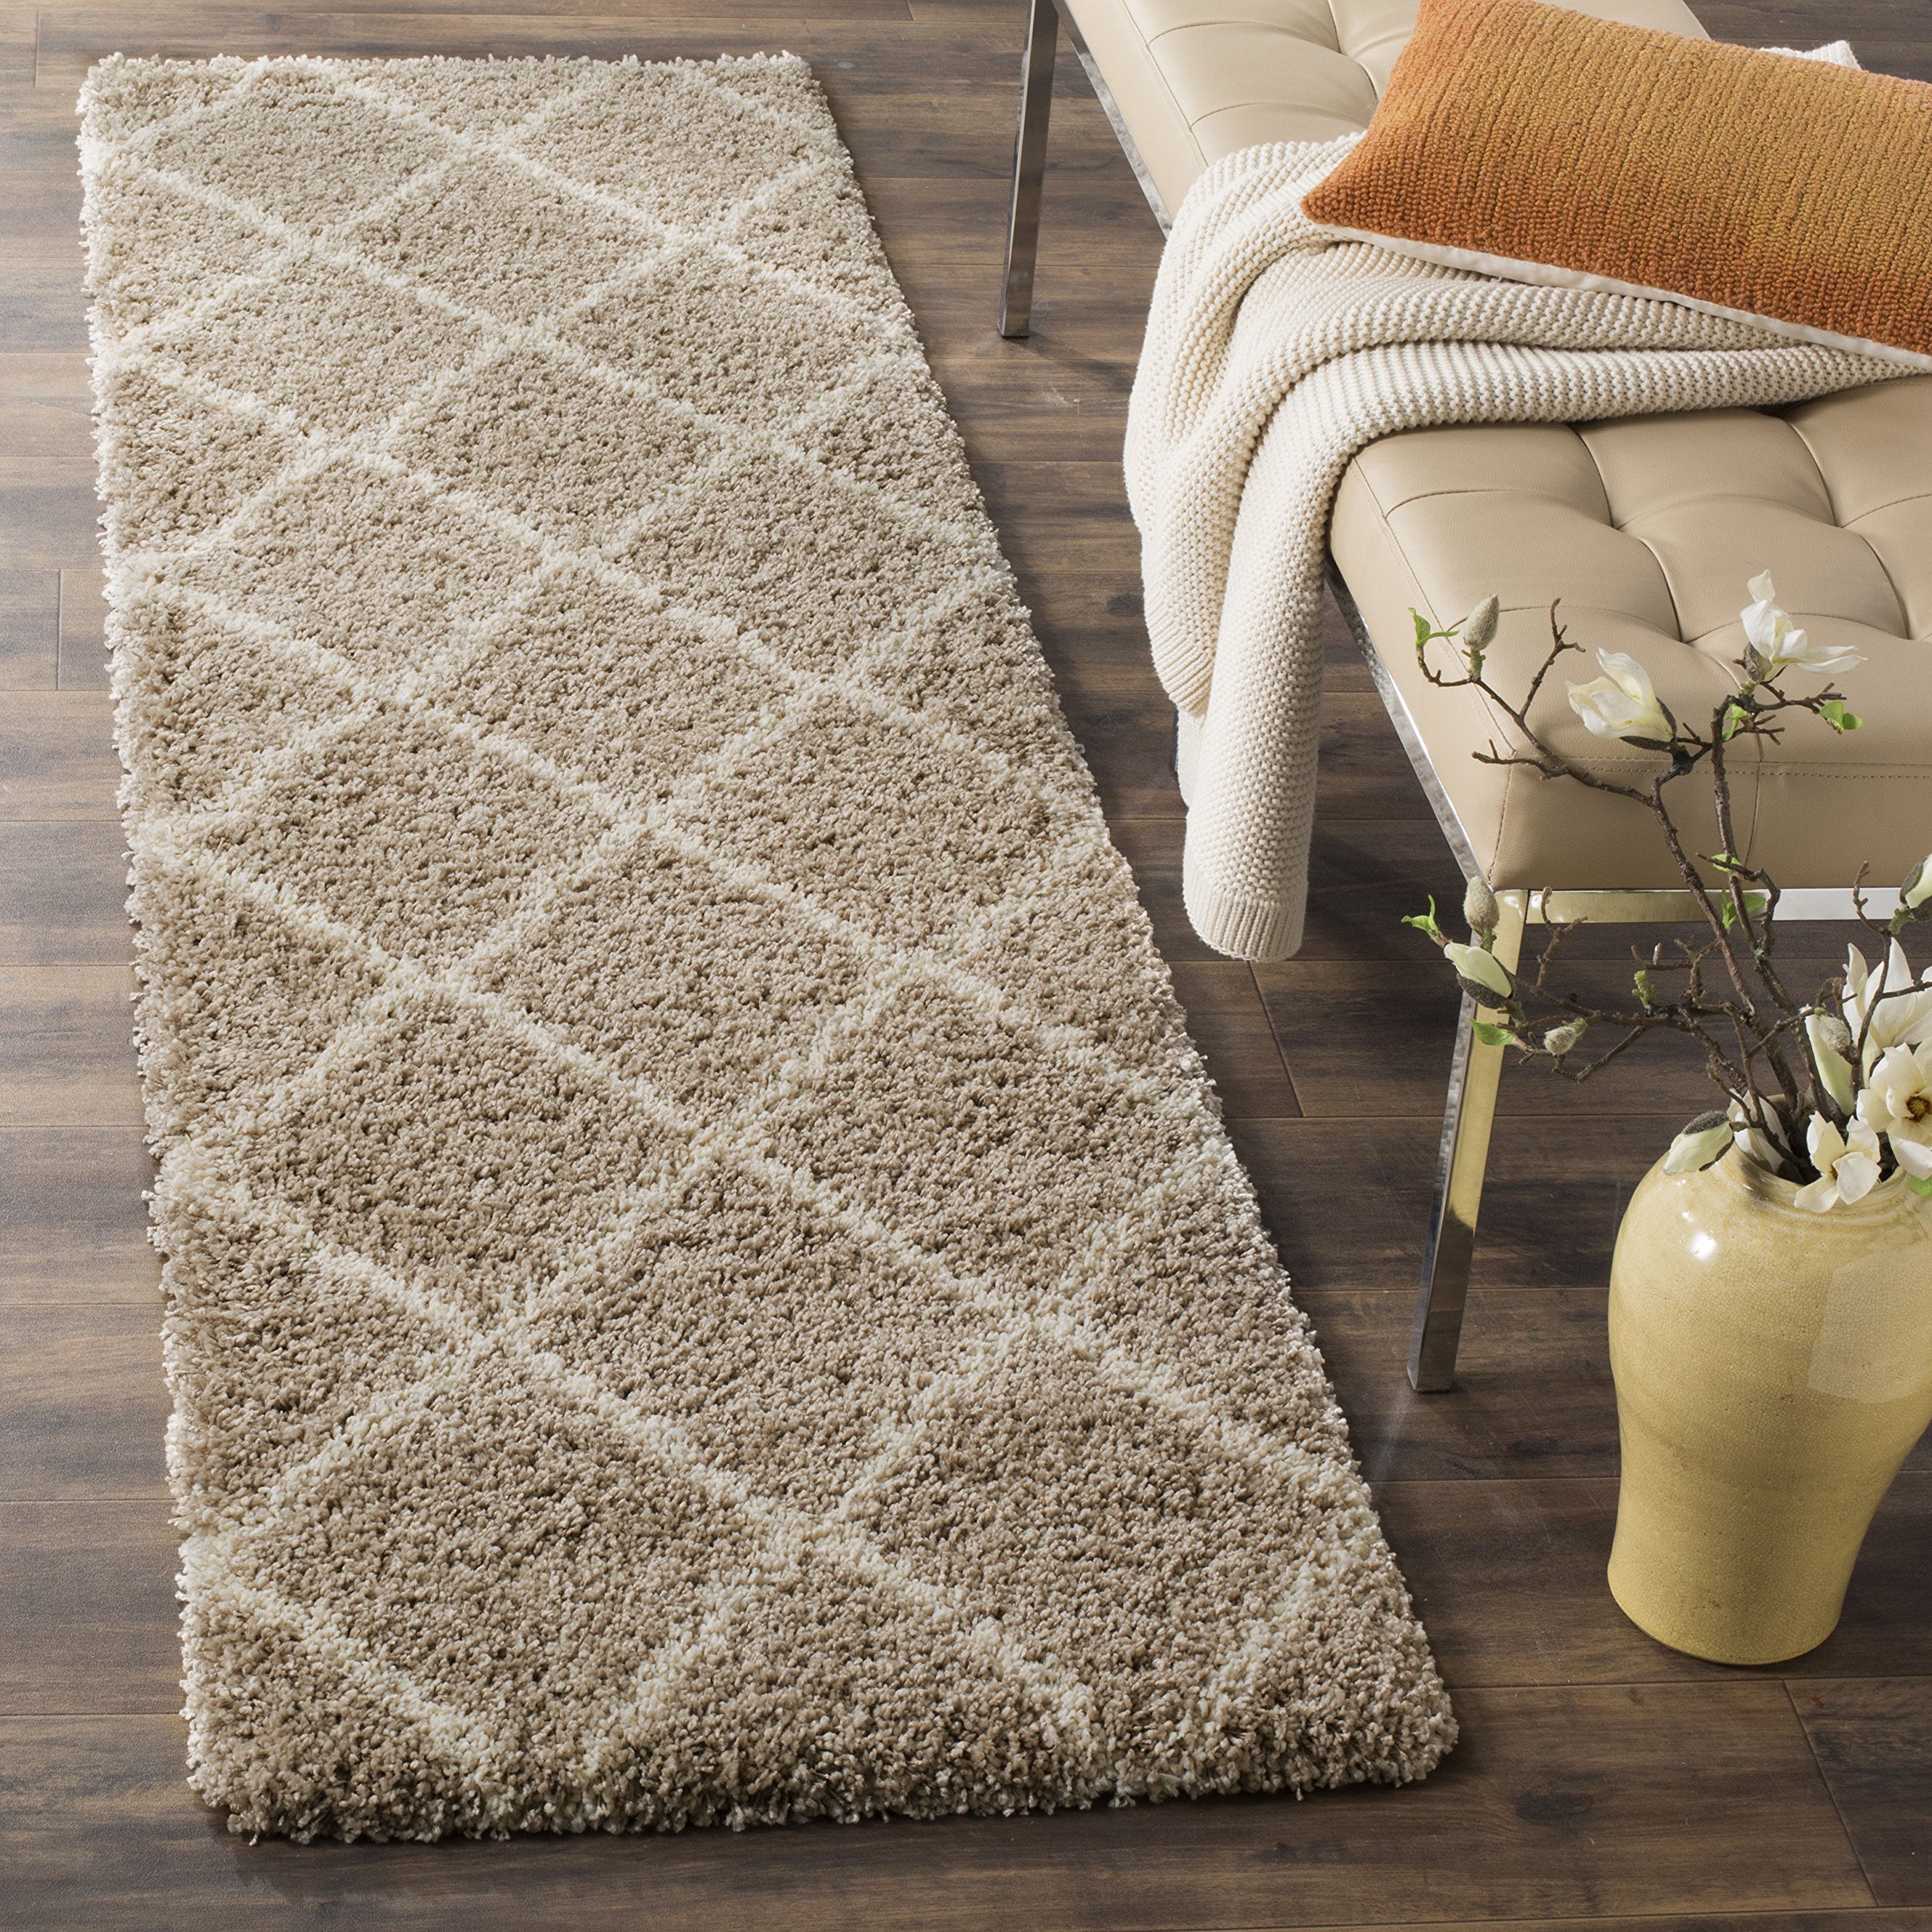 Safavieh Hudson Shag 系列特色地毯 - 2 英寸 x 3 英寸，米色和象牙色，现代格子设计...